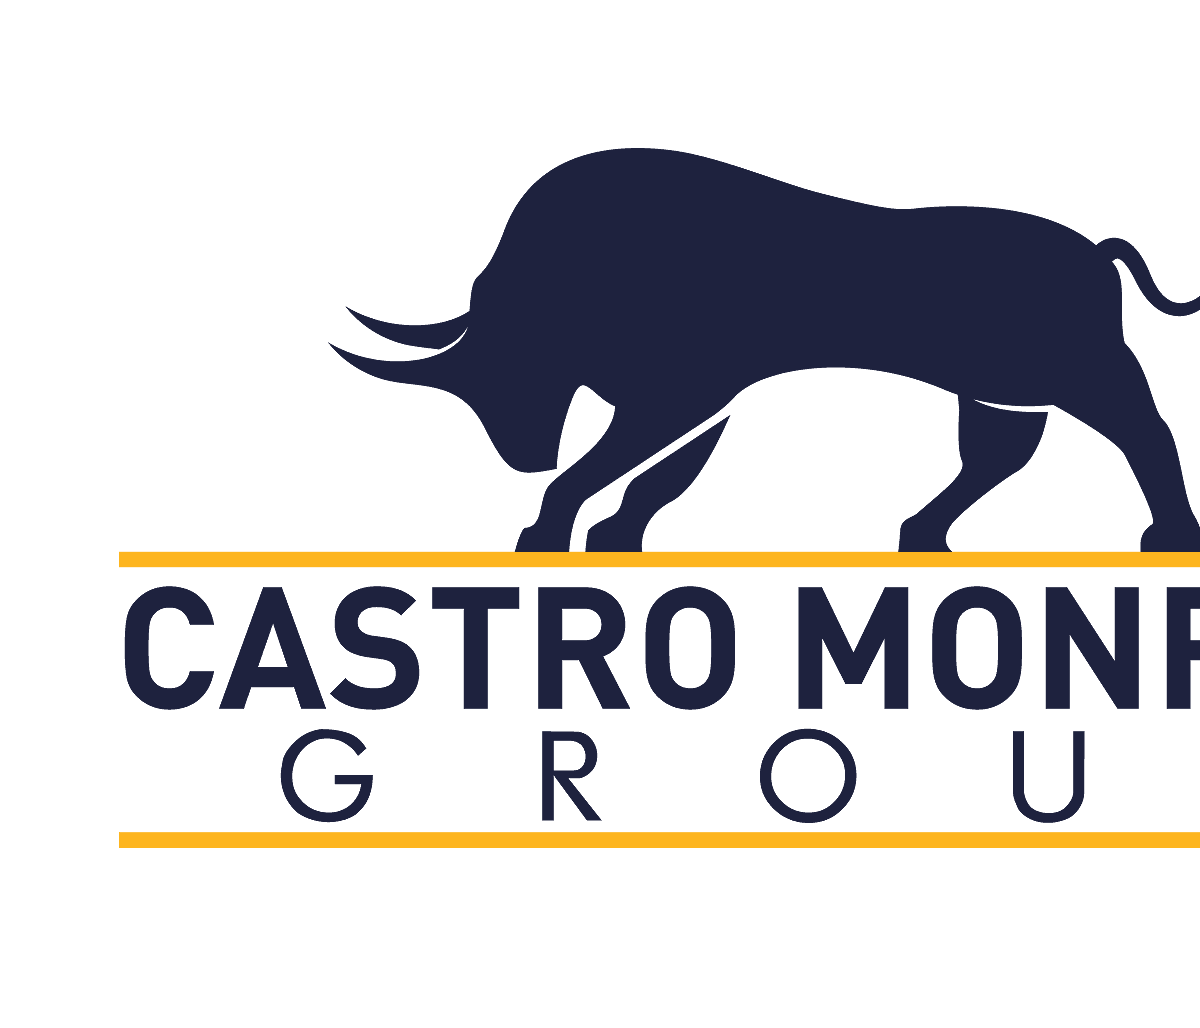 Castro-Monroy-Group-Logo-Design-01